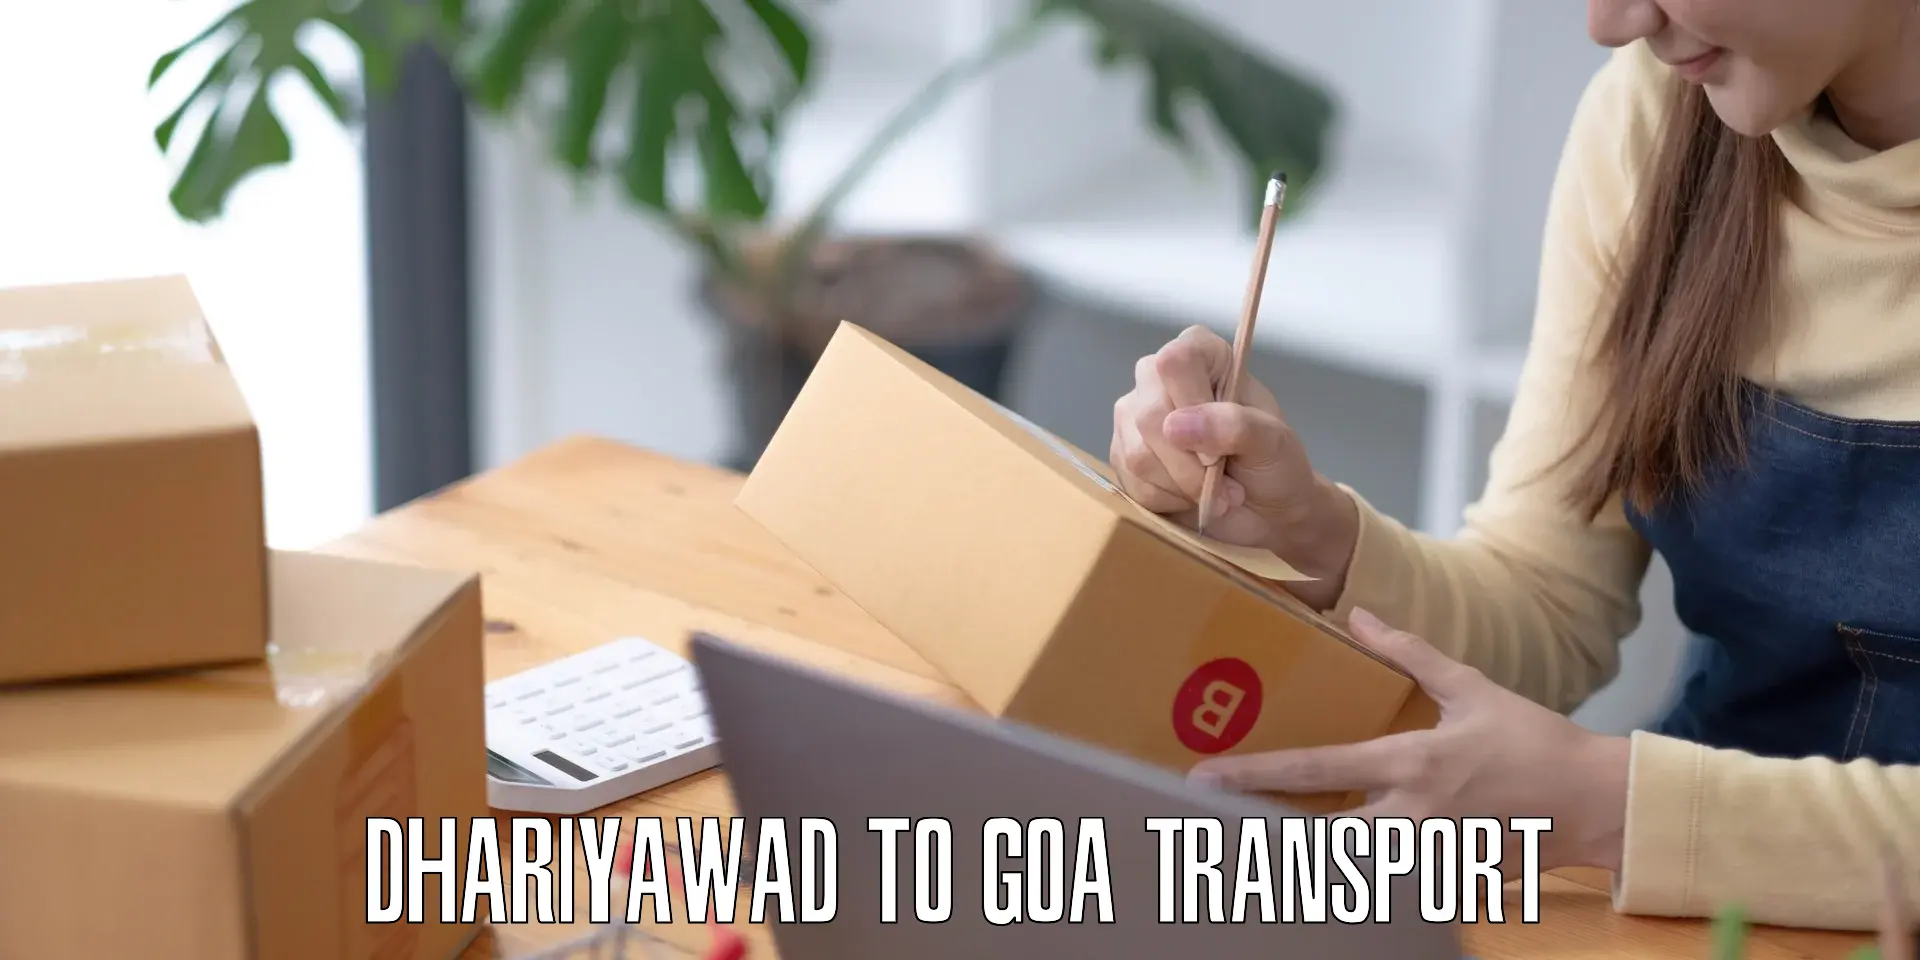 Furniture transport service Dhariyawad to Goa